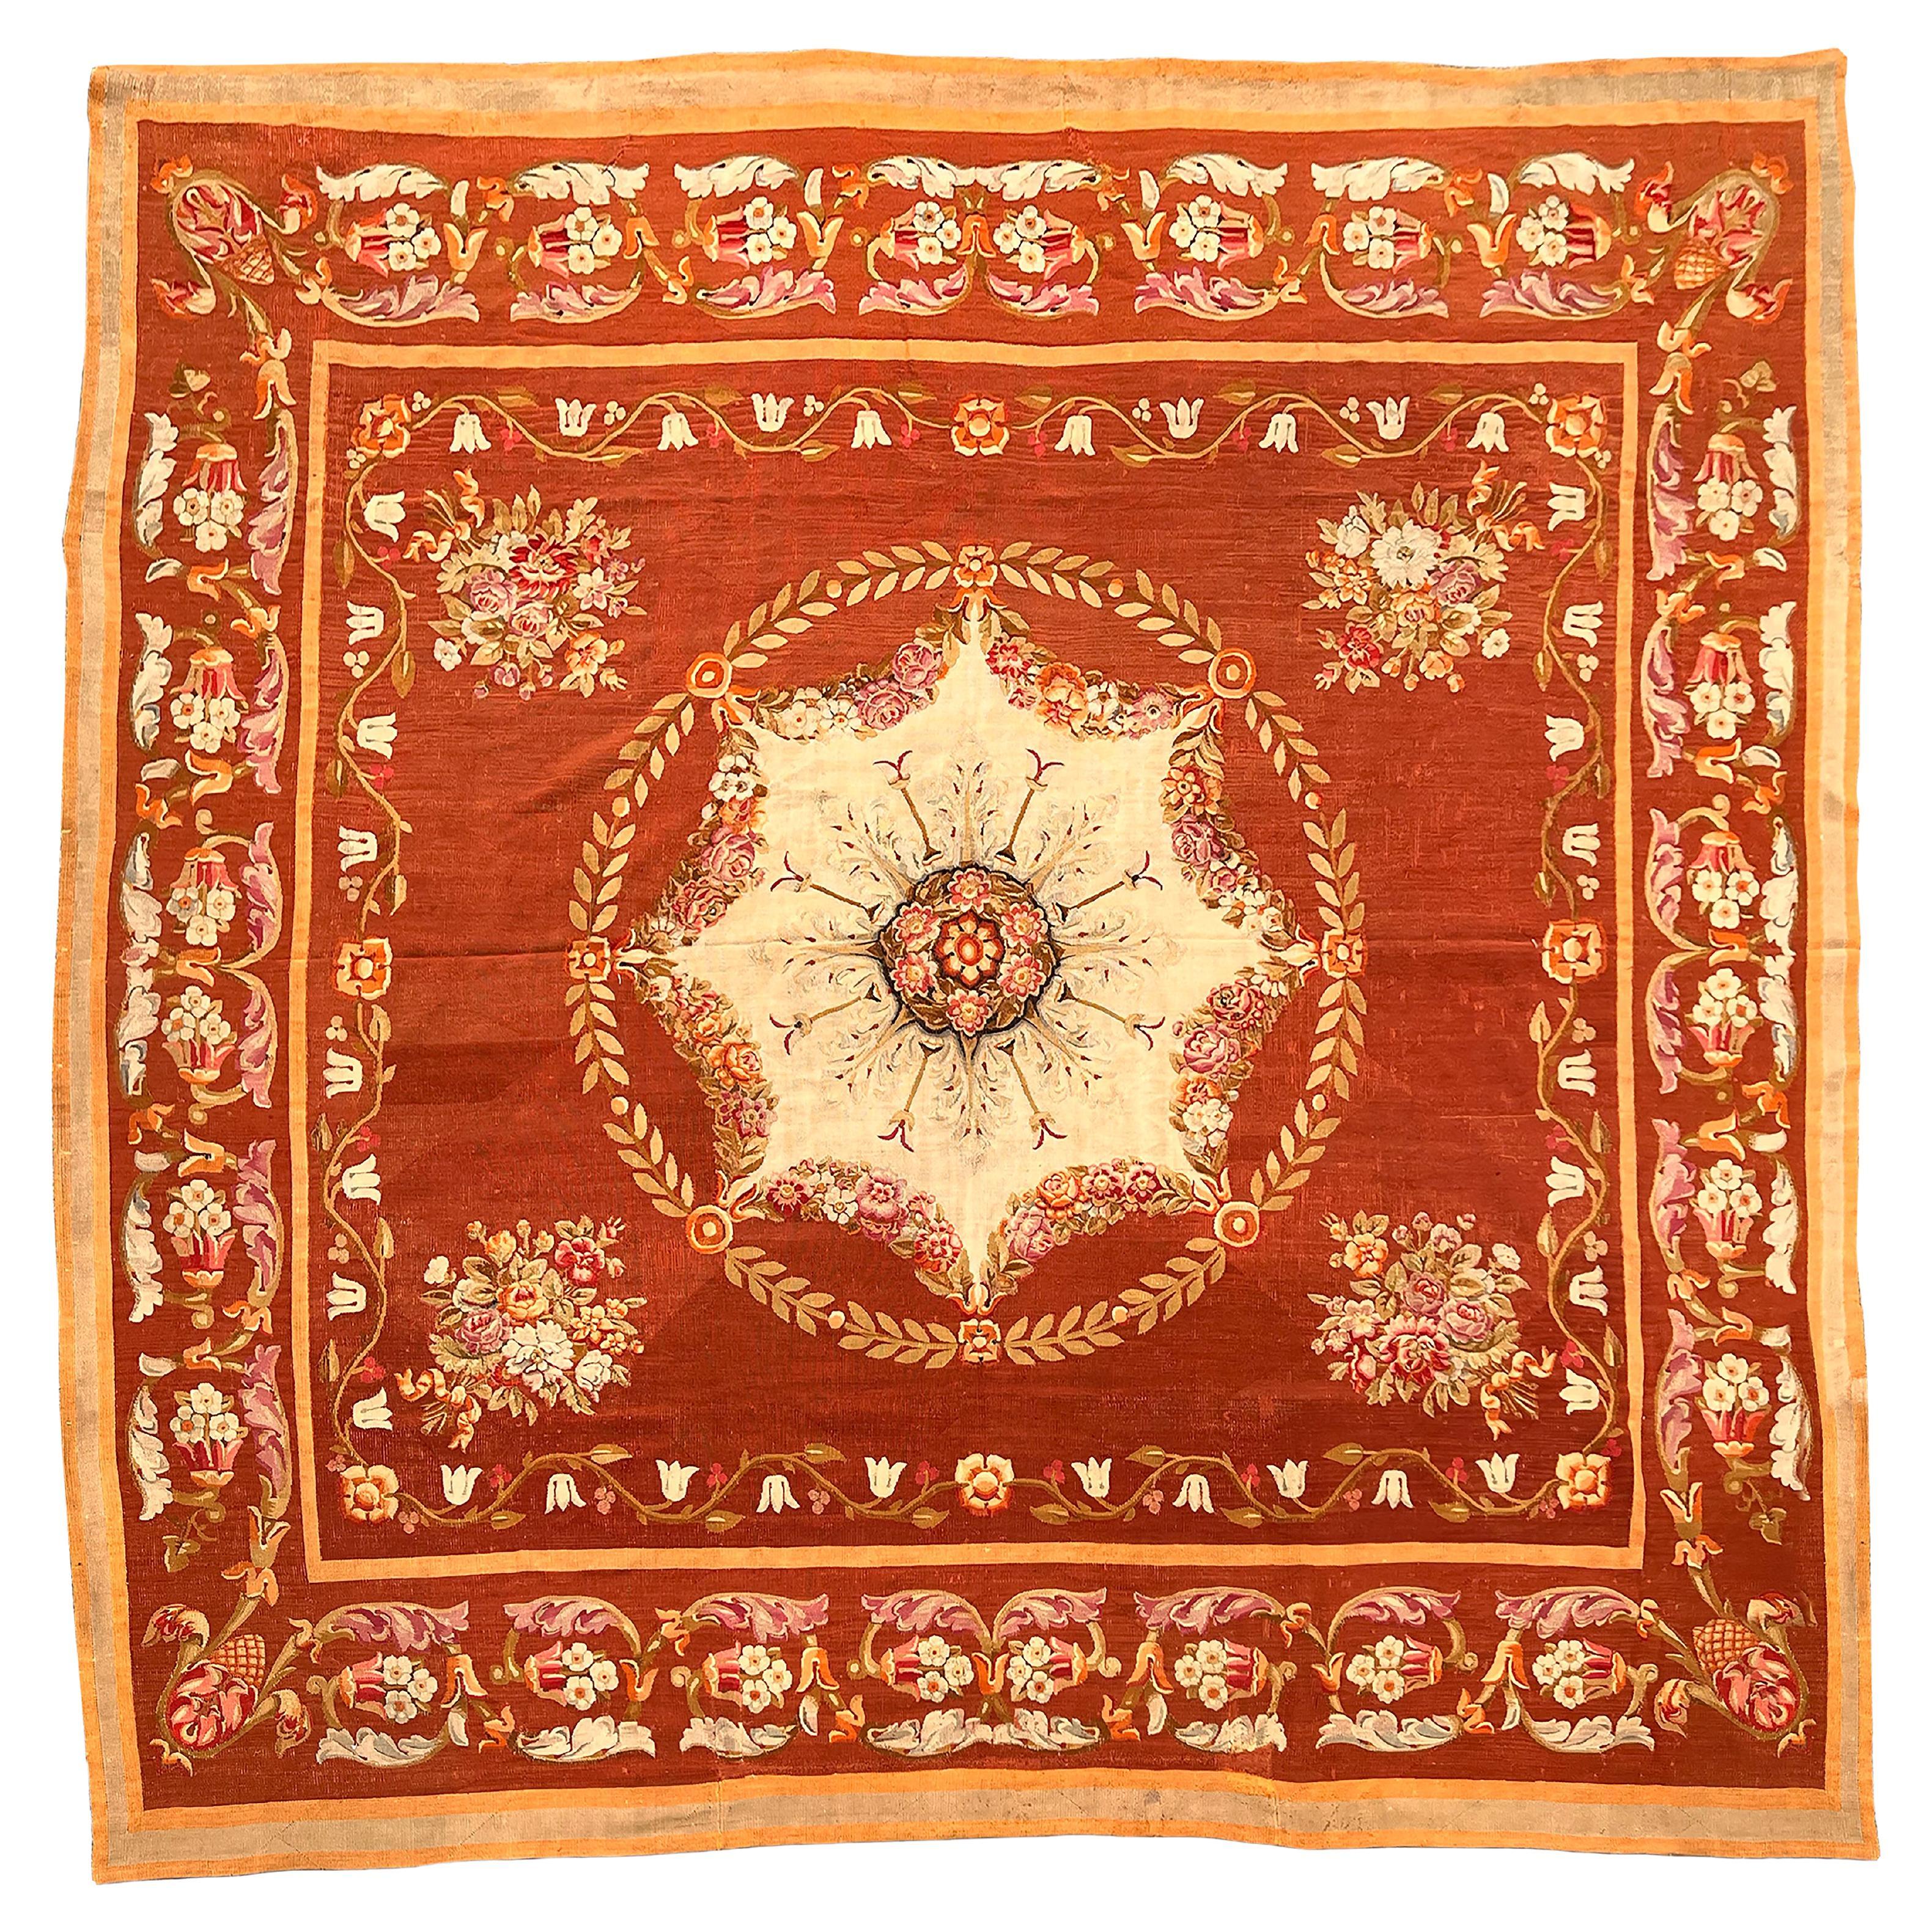 Neoklassizistischer Aubusson-Teppich mit Medaillon aus dem frühen 19. Jahrhundert